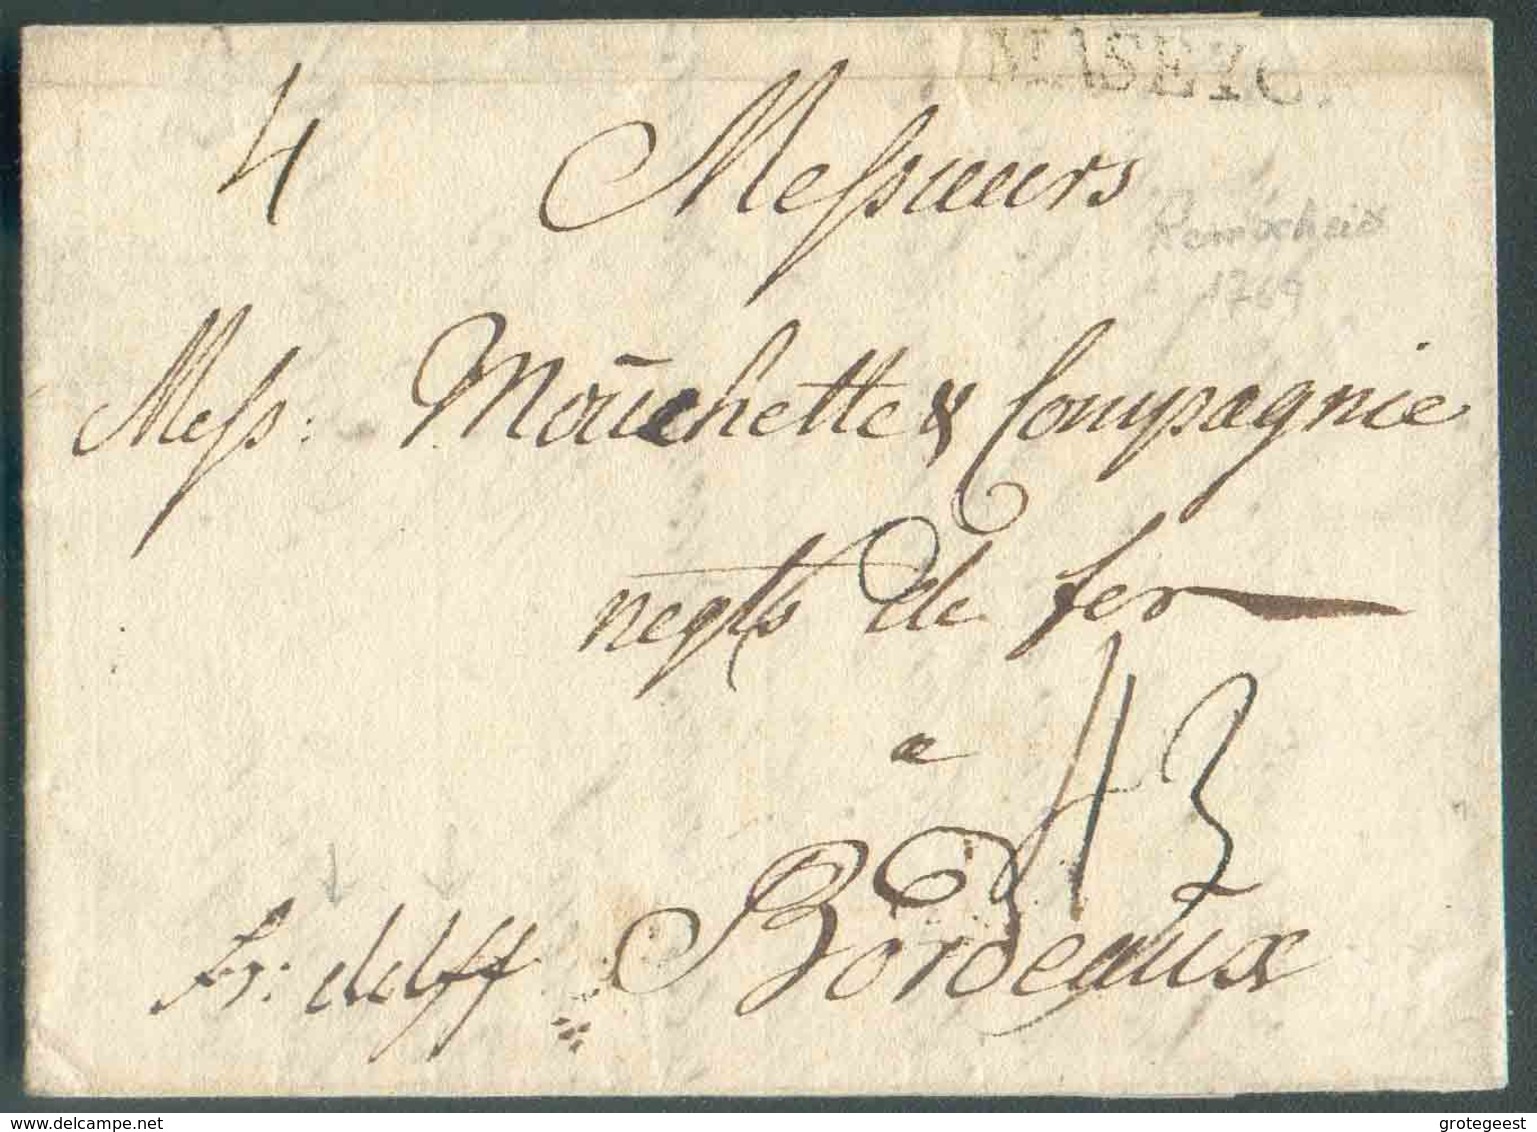 LAC Datée De REMSCHEID Le 16 Mars 1769 + Griffe MASEYCK Et Manuscrit 'fr.dslff' (franco Dusseldorff) Vers Bordeaux; Port - 1714-1794 (Oesterreichische Niederlande)